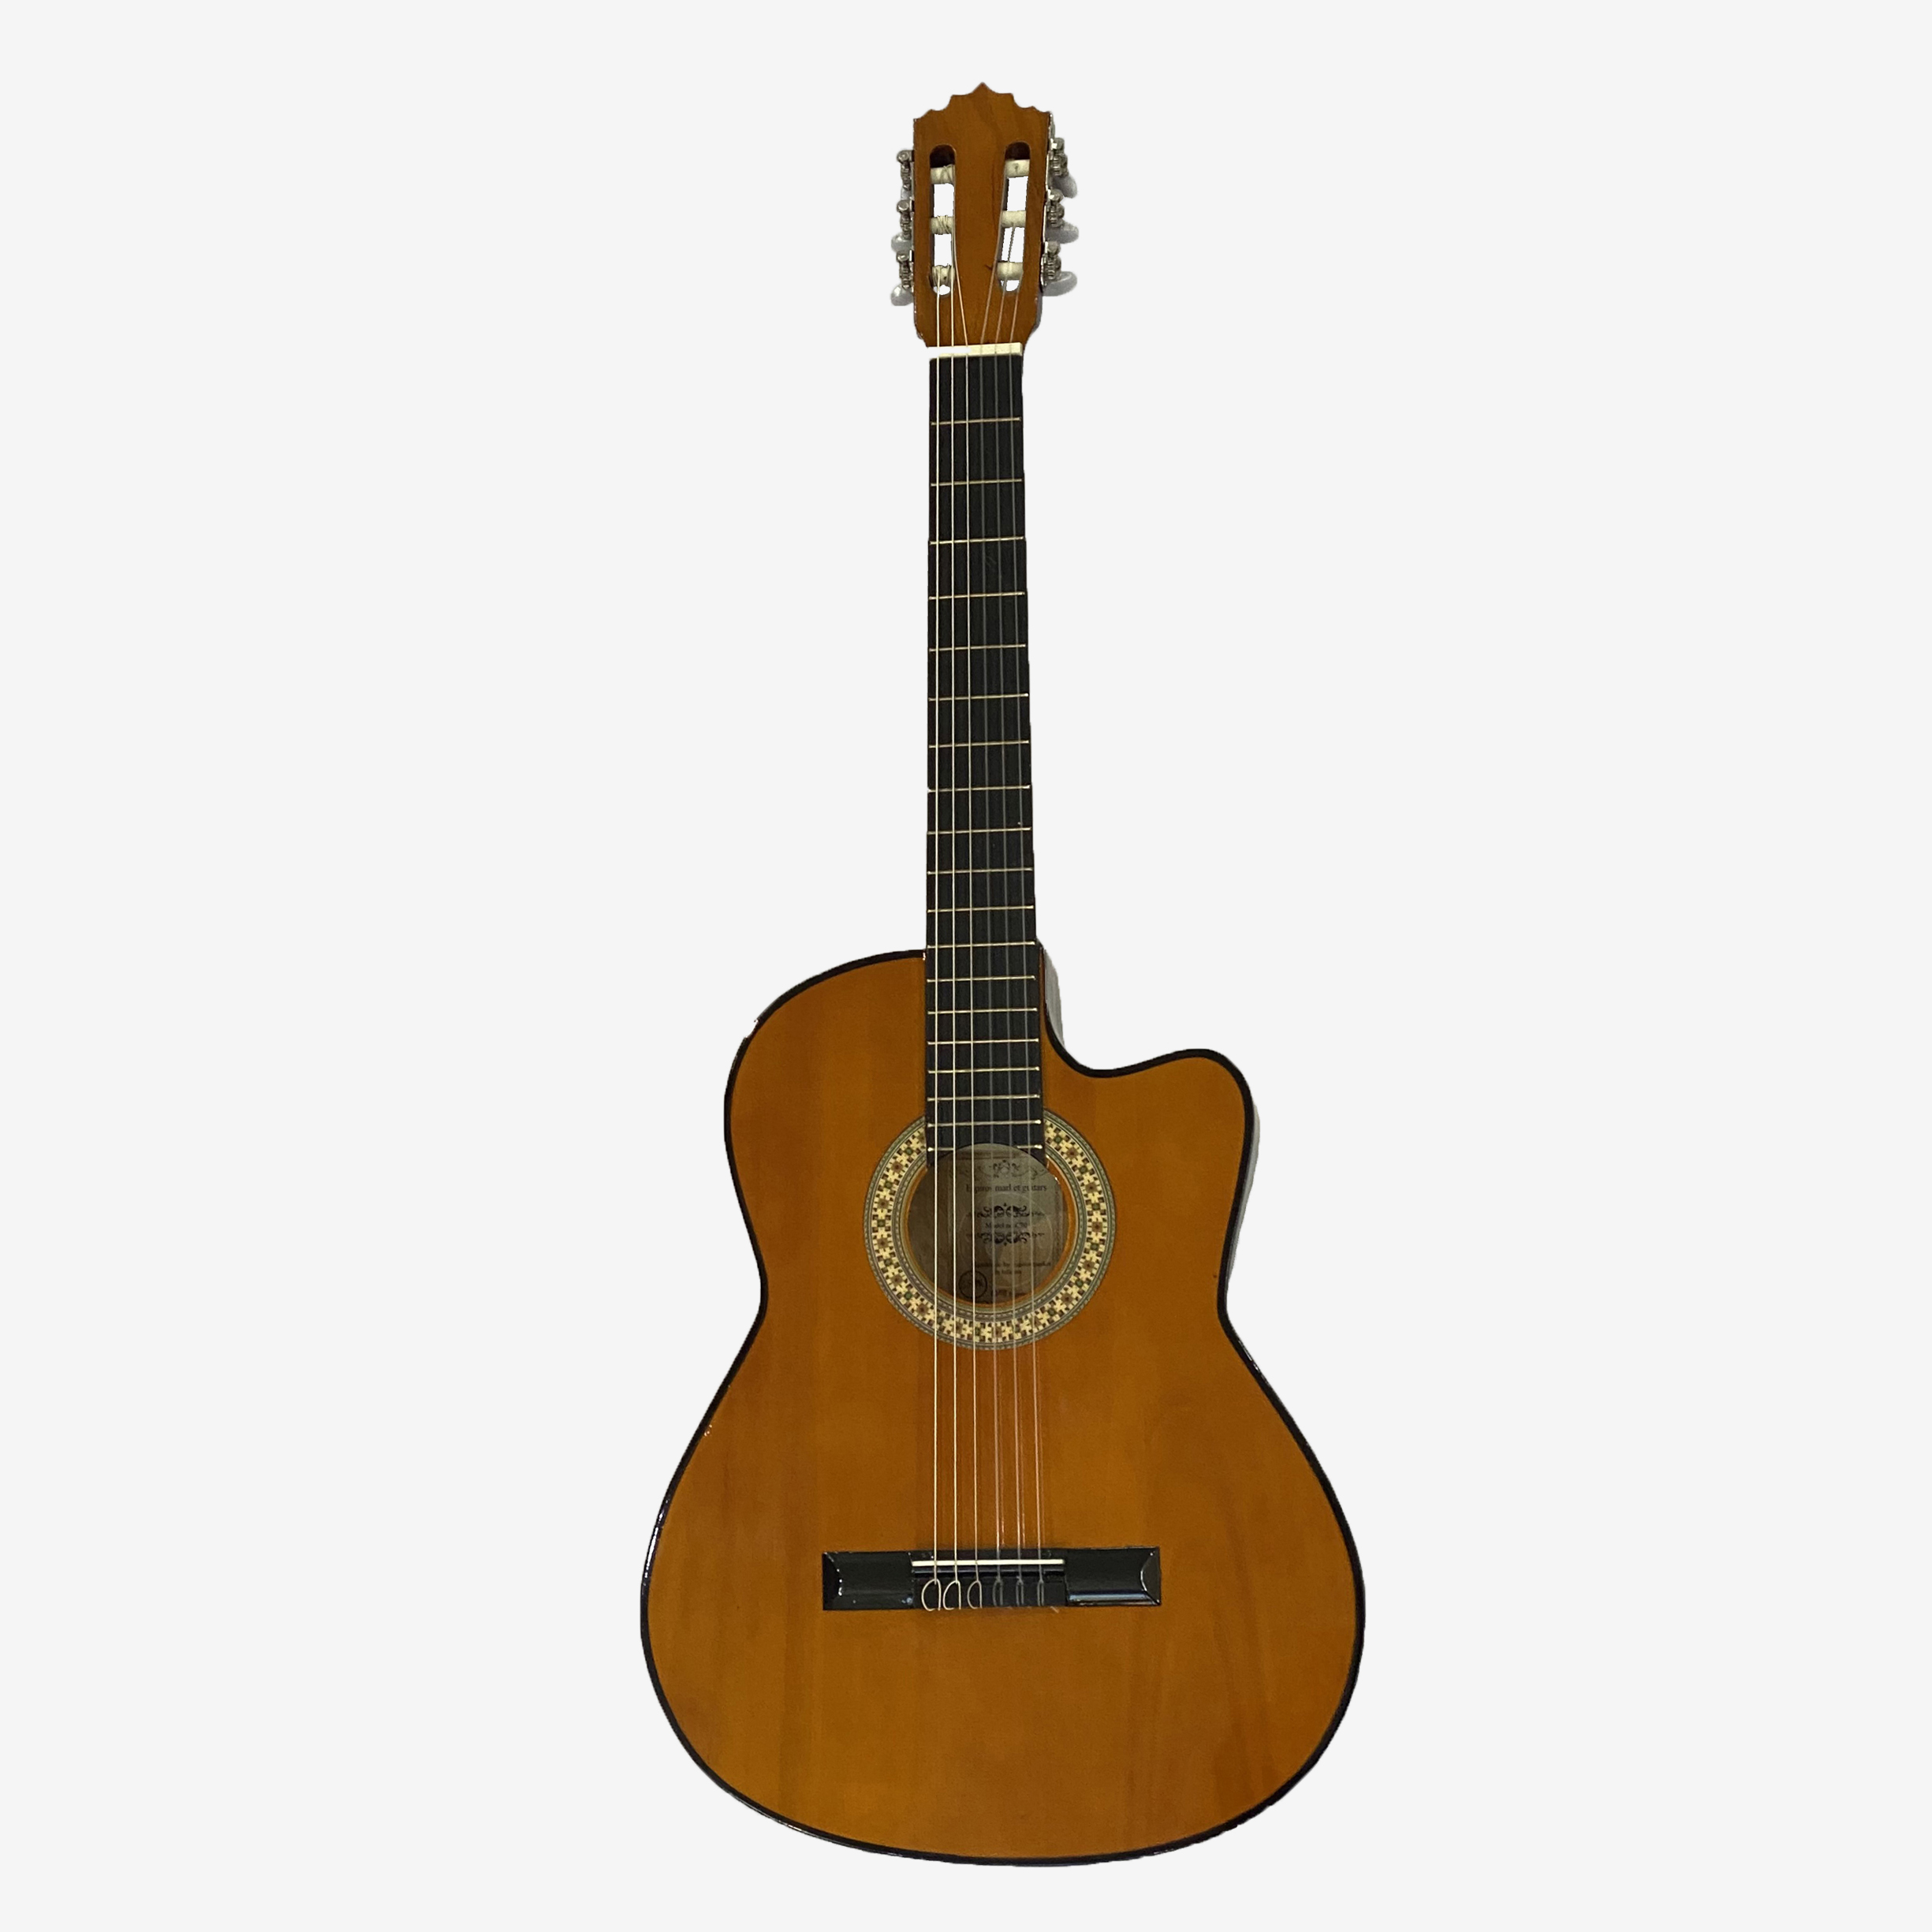 نکته خرید - قیمت روز گیتار پاپ اسپیروس مارکت مدل C.70 خرید